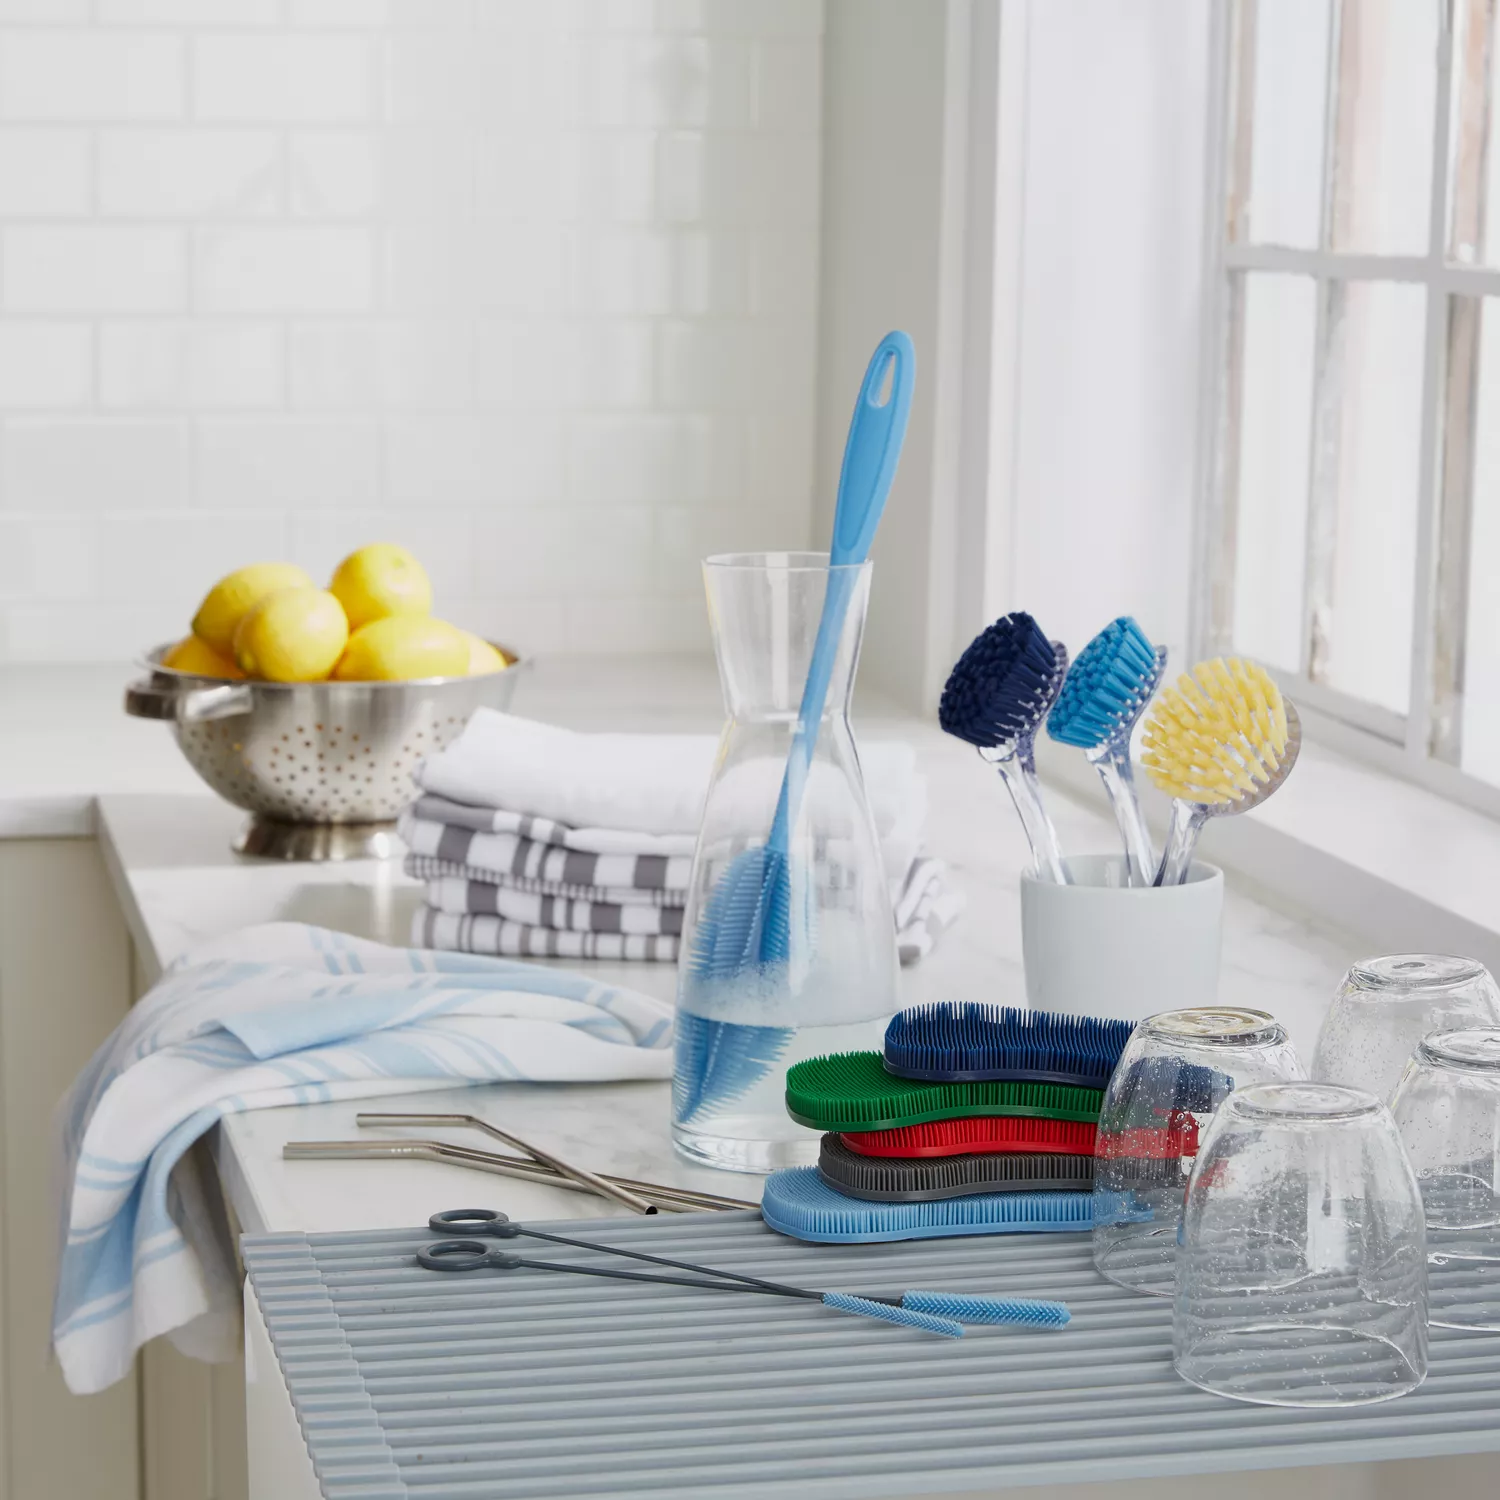 Sink Brush Scrubber Soap Dispensing Dish Brush - 3 Sponge Heads